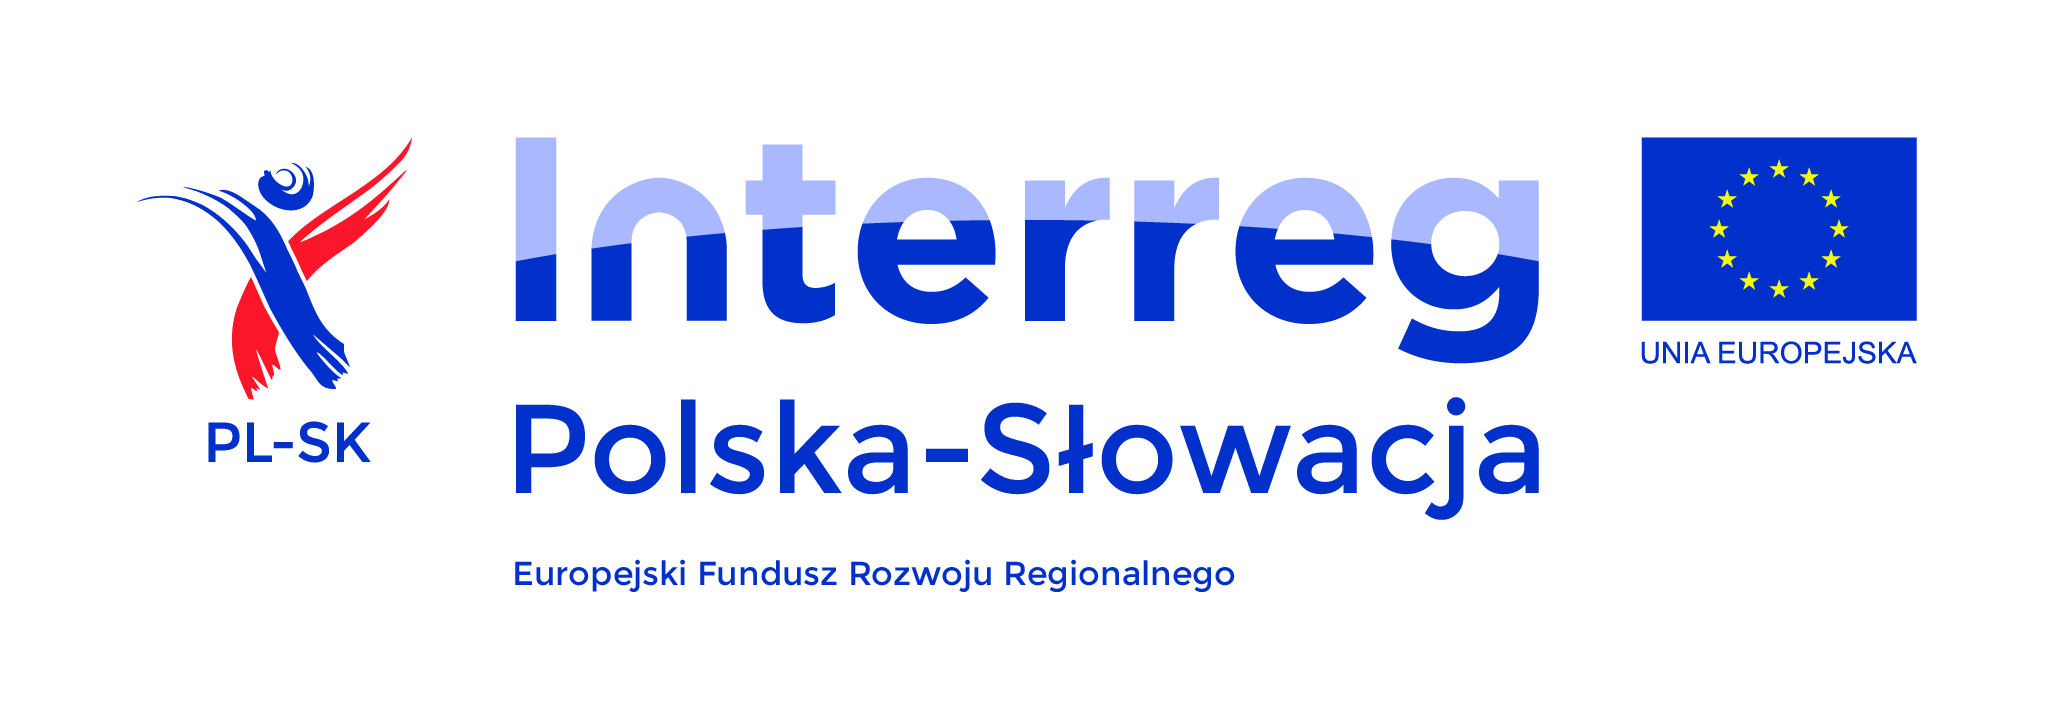 http://parafia-rajcza.j.pl/wp-content/uploads/2020/02/logotyp-kolorowy.jpg